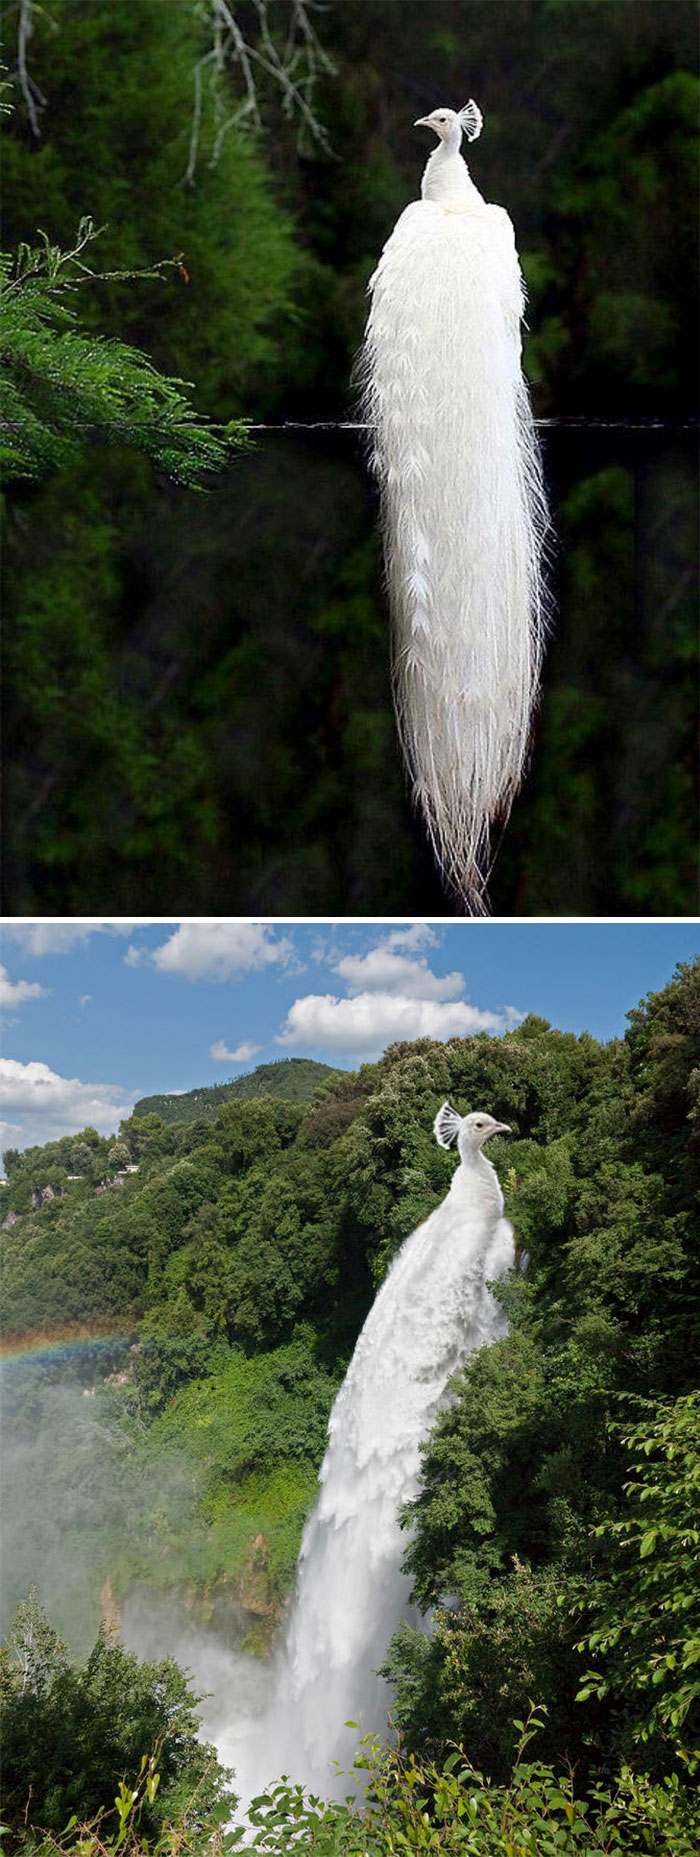 A White Peacock